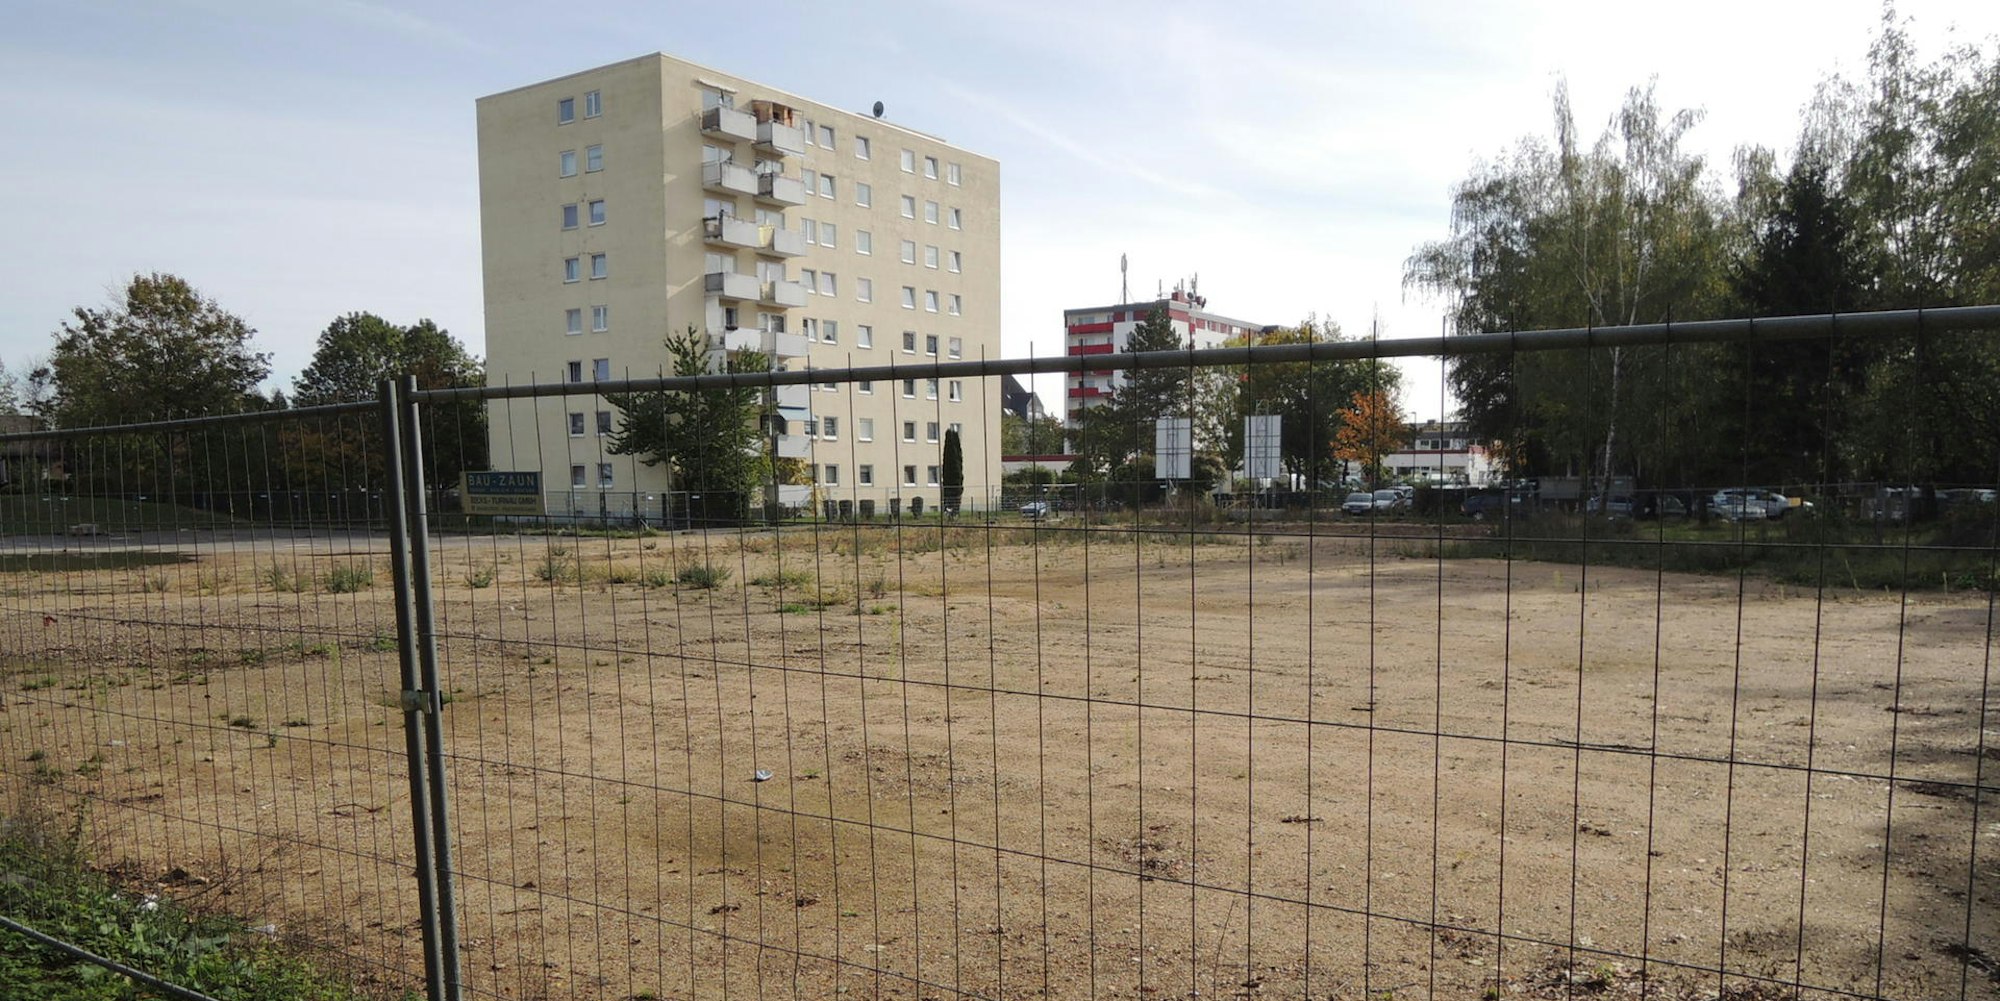 Auf dem Gelände des abgerissenen Hochhauses an der Maastrichter Straße soll ein großes Begegnungszentrum entstehen.